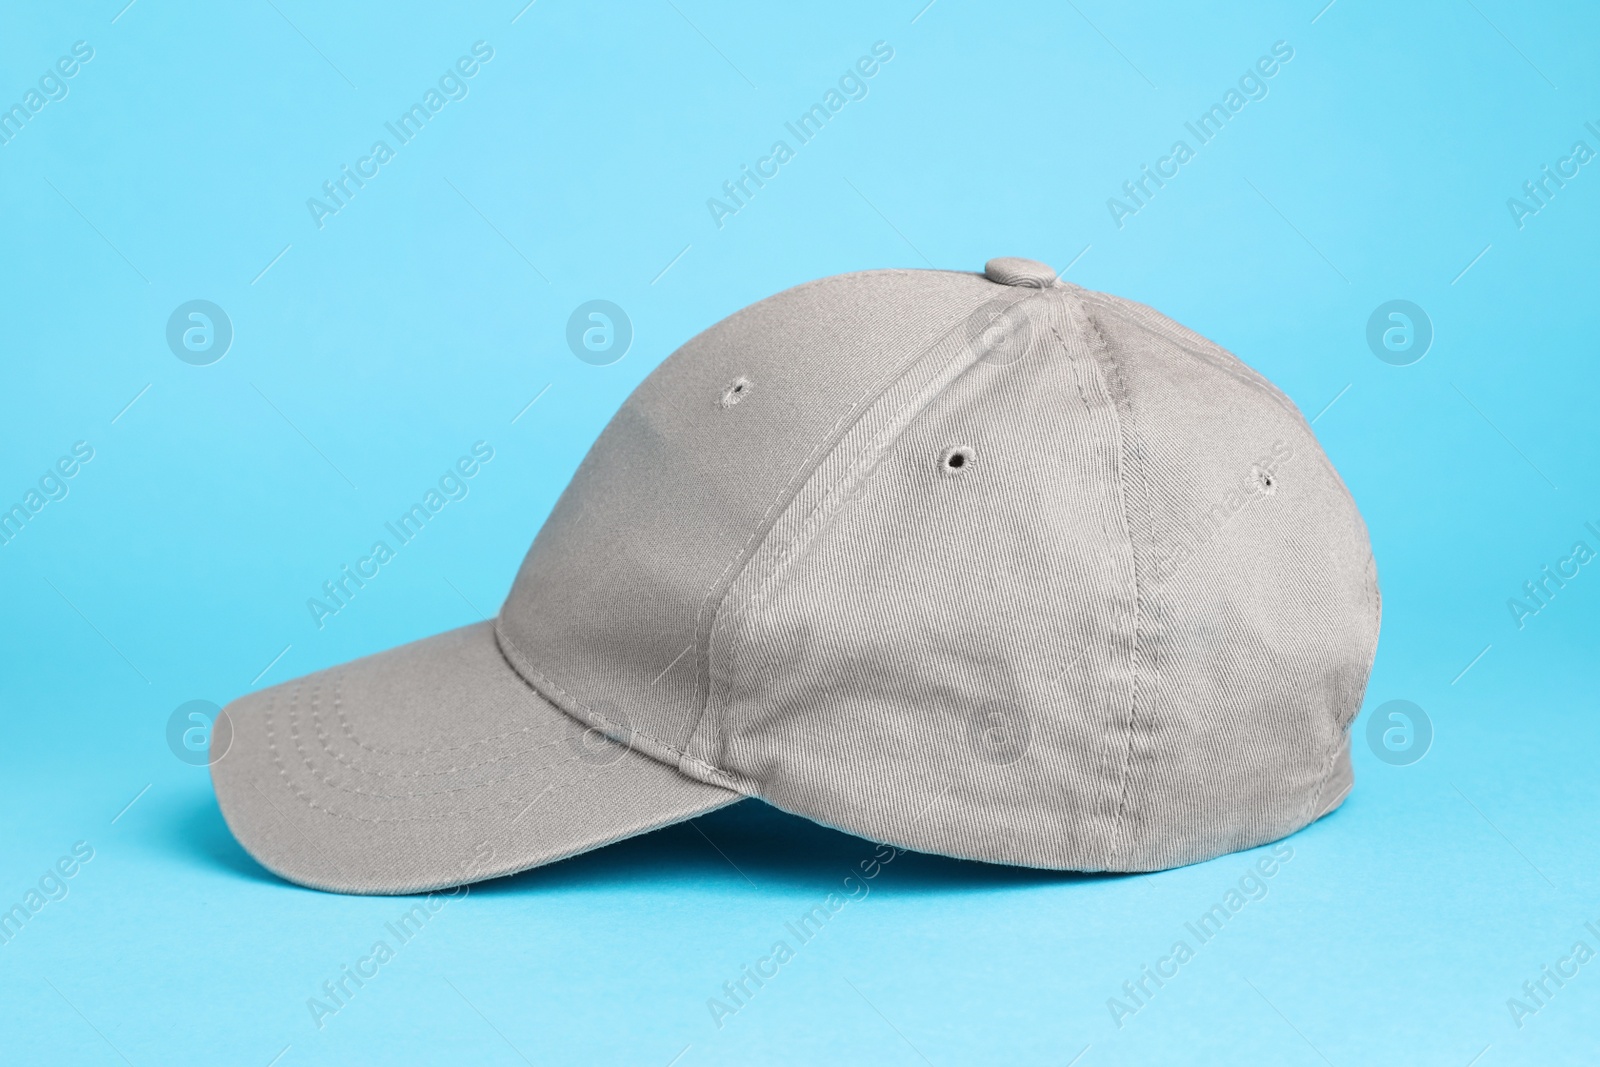 Photo of Stylish grey baseball cap on light blue background